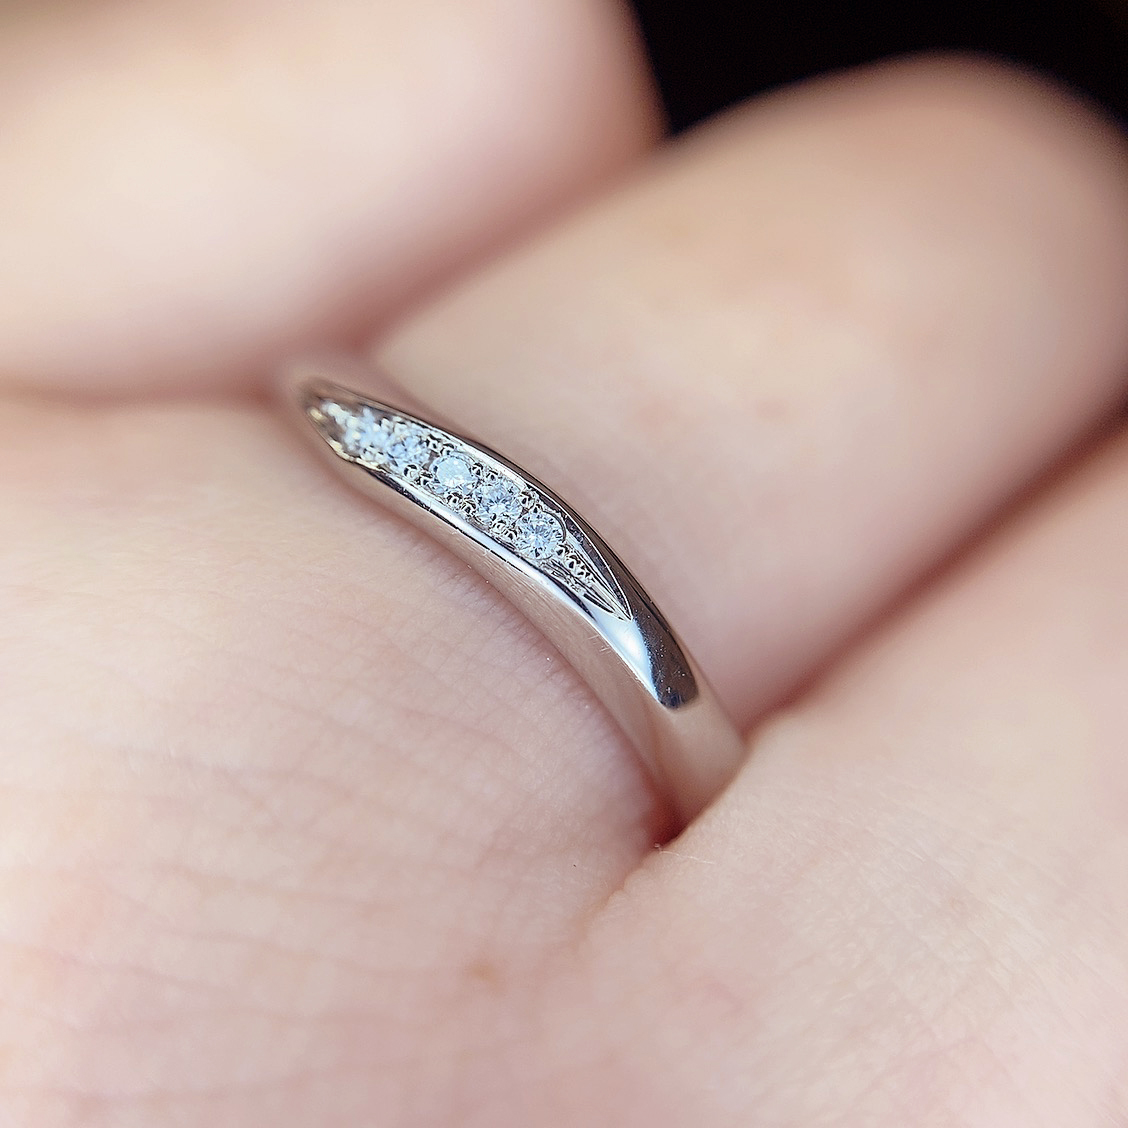 TOWAIYOU OCEAN オーシャン – 浜松市最大級の婚約指輪や結婚指輪が揃う